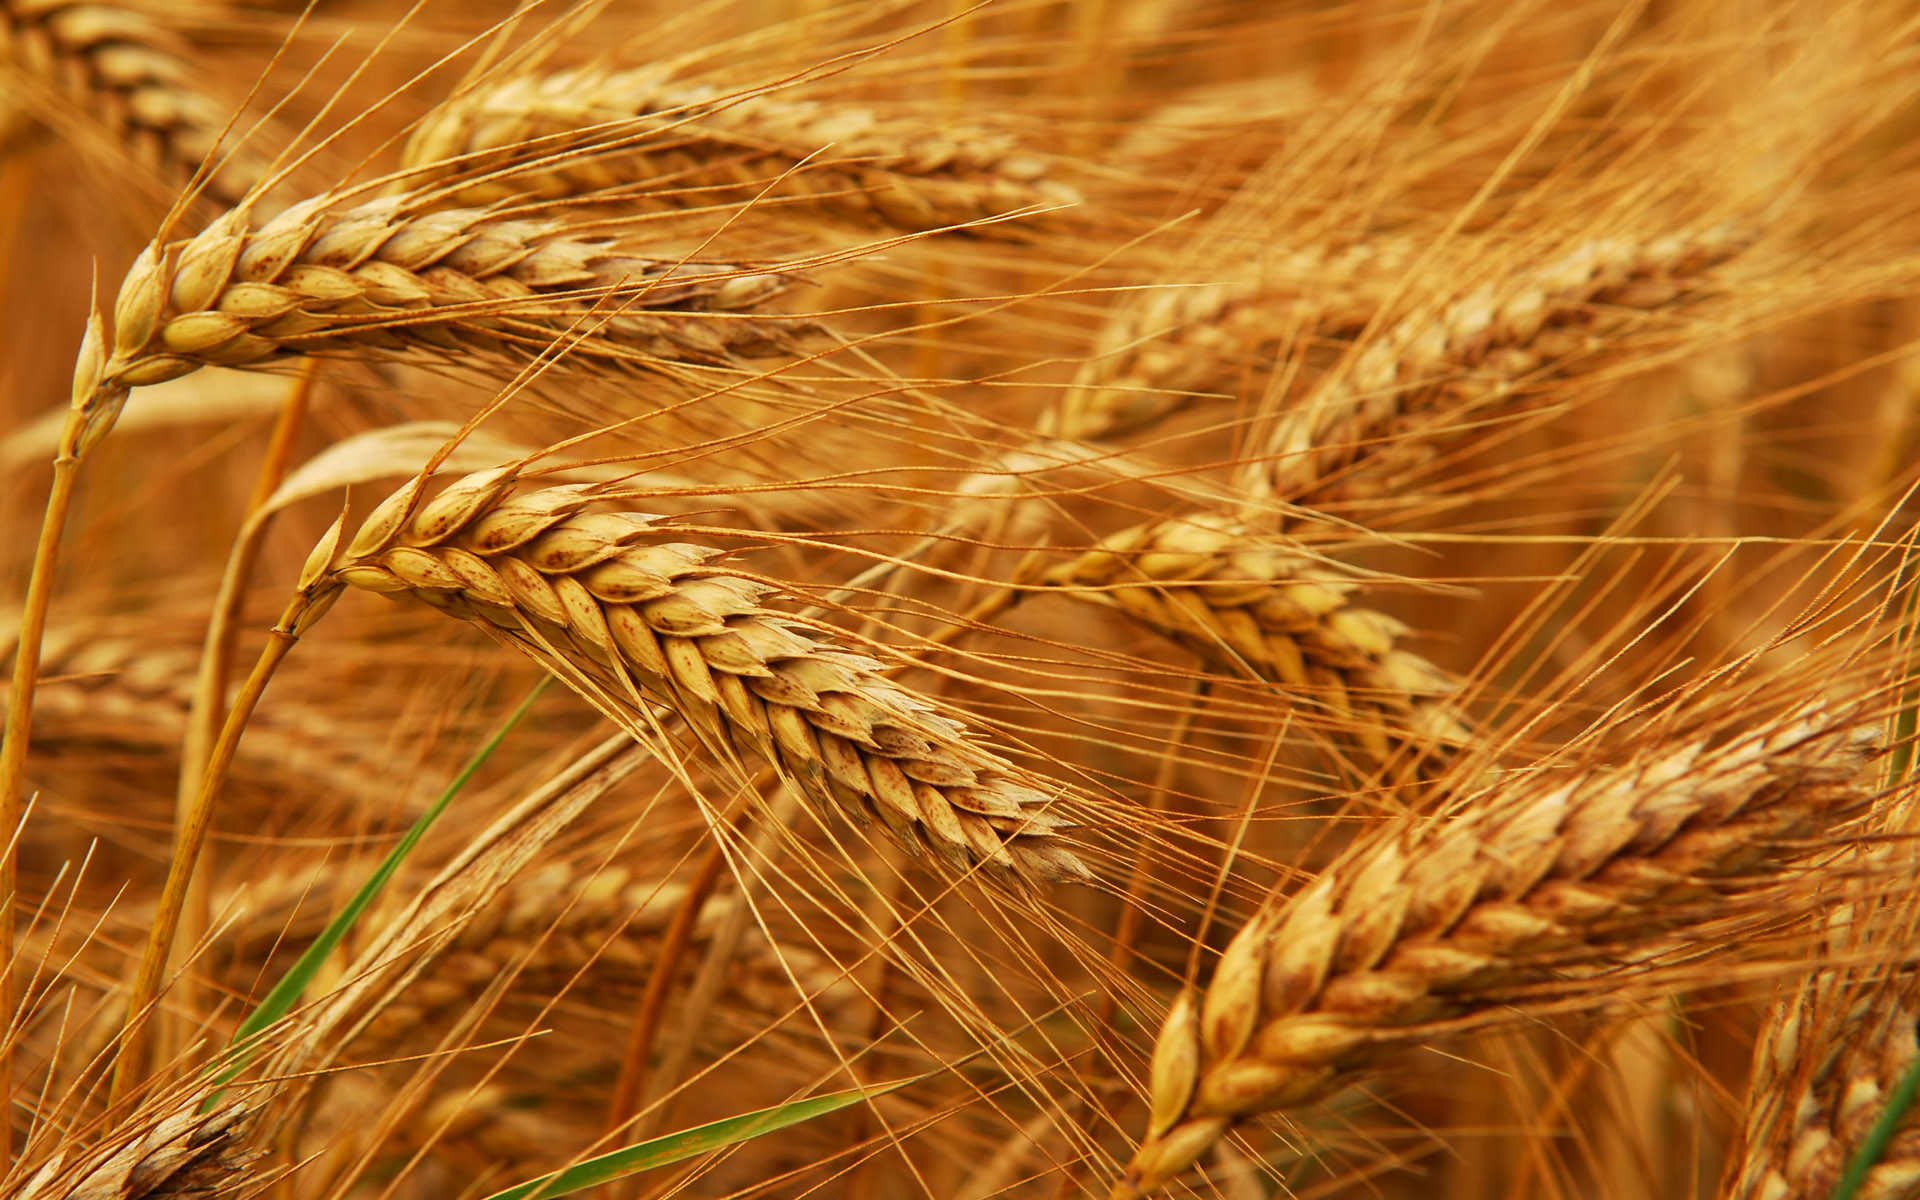 مصر تسعى لتحقيق الأمن الغذائي بالتوسع في زراعة القمح.. واعتماد نظم الري الحديثة